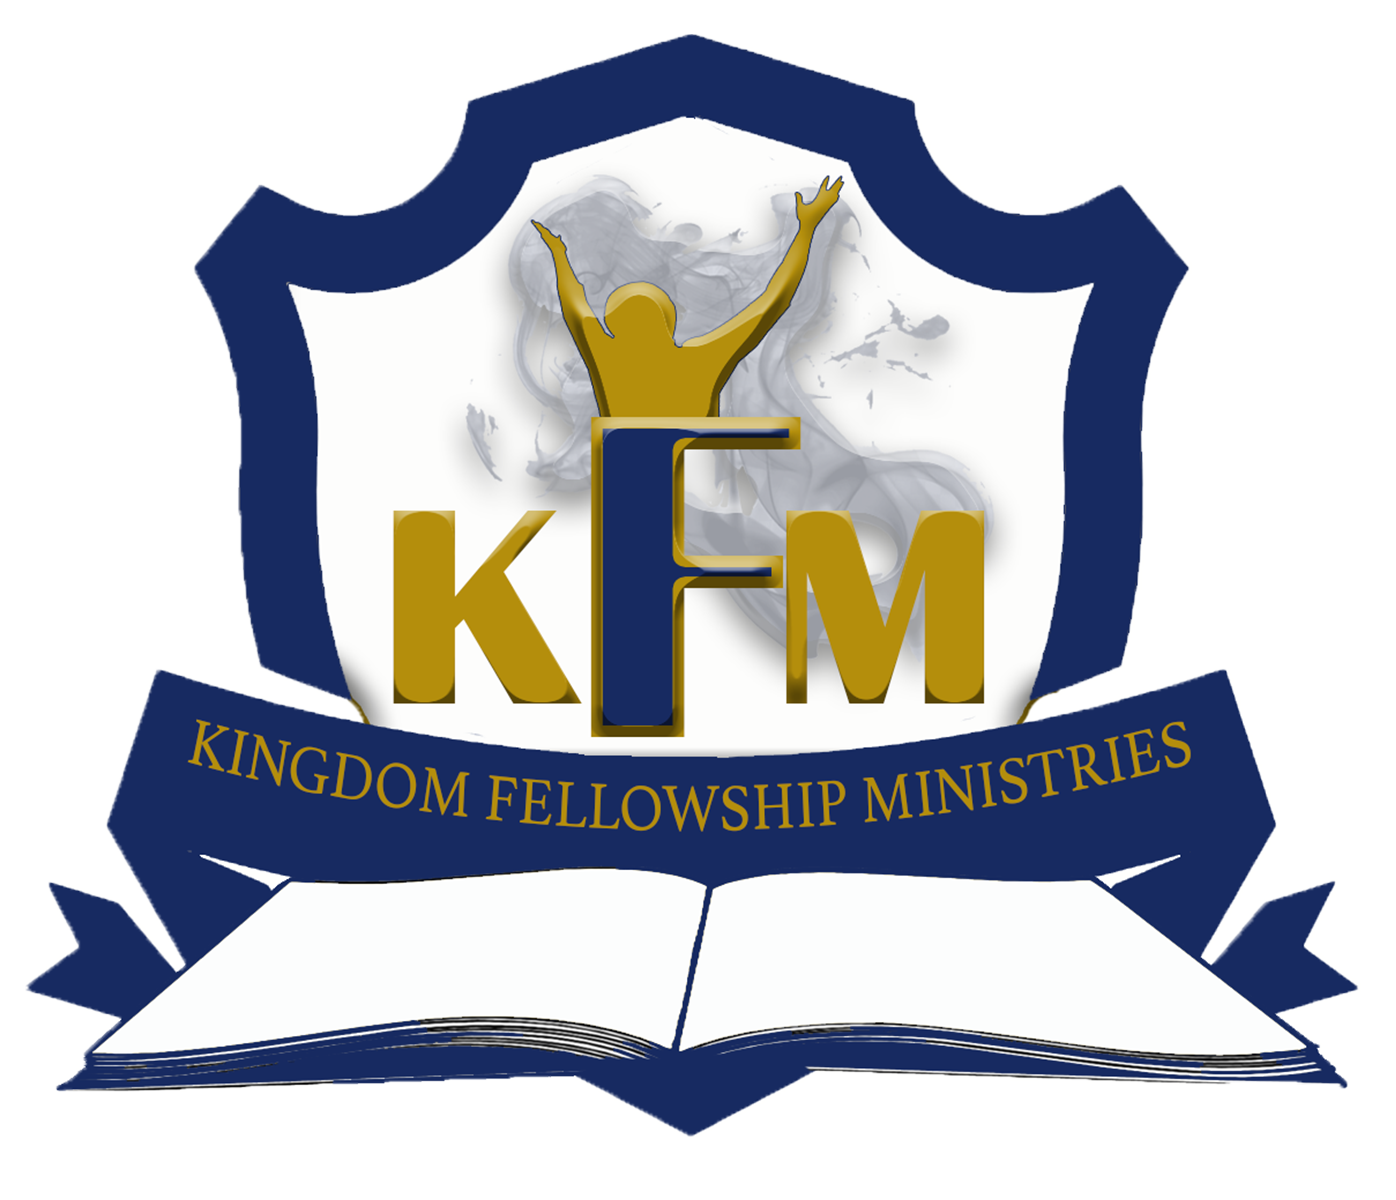 Kingdom Fellowship Ministries